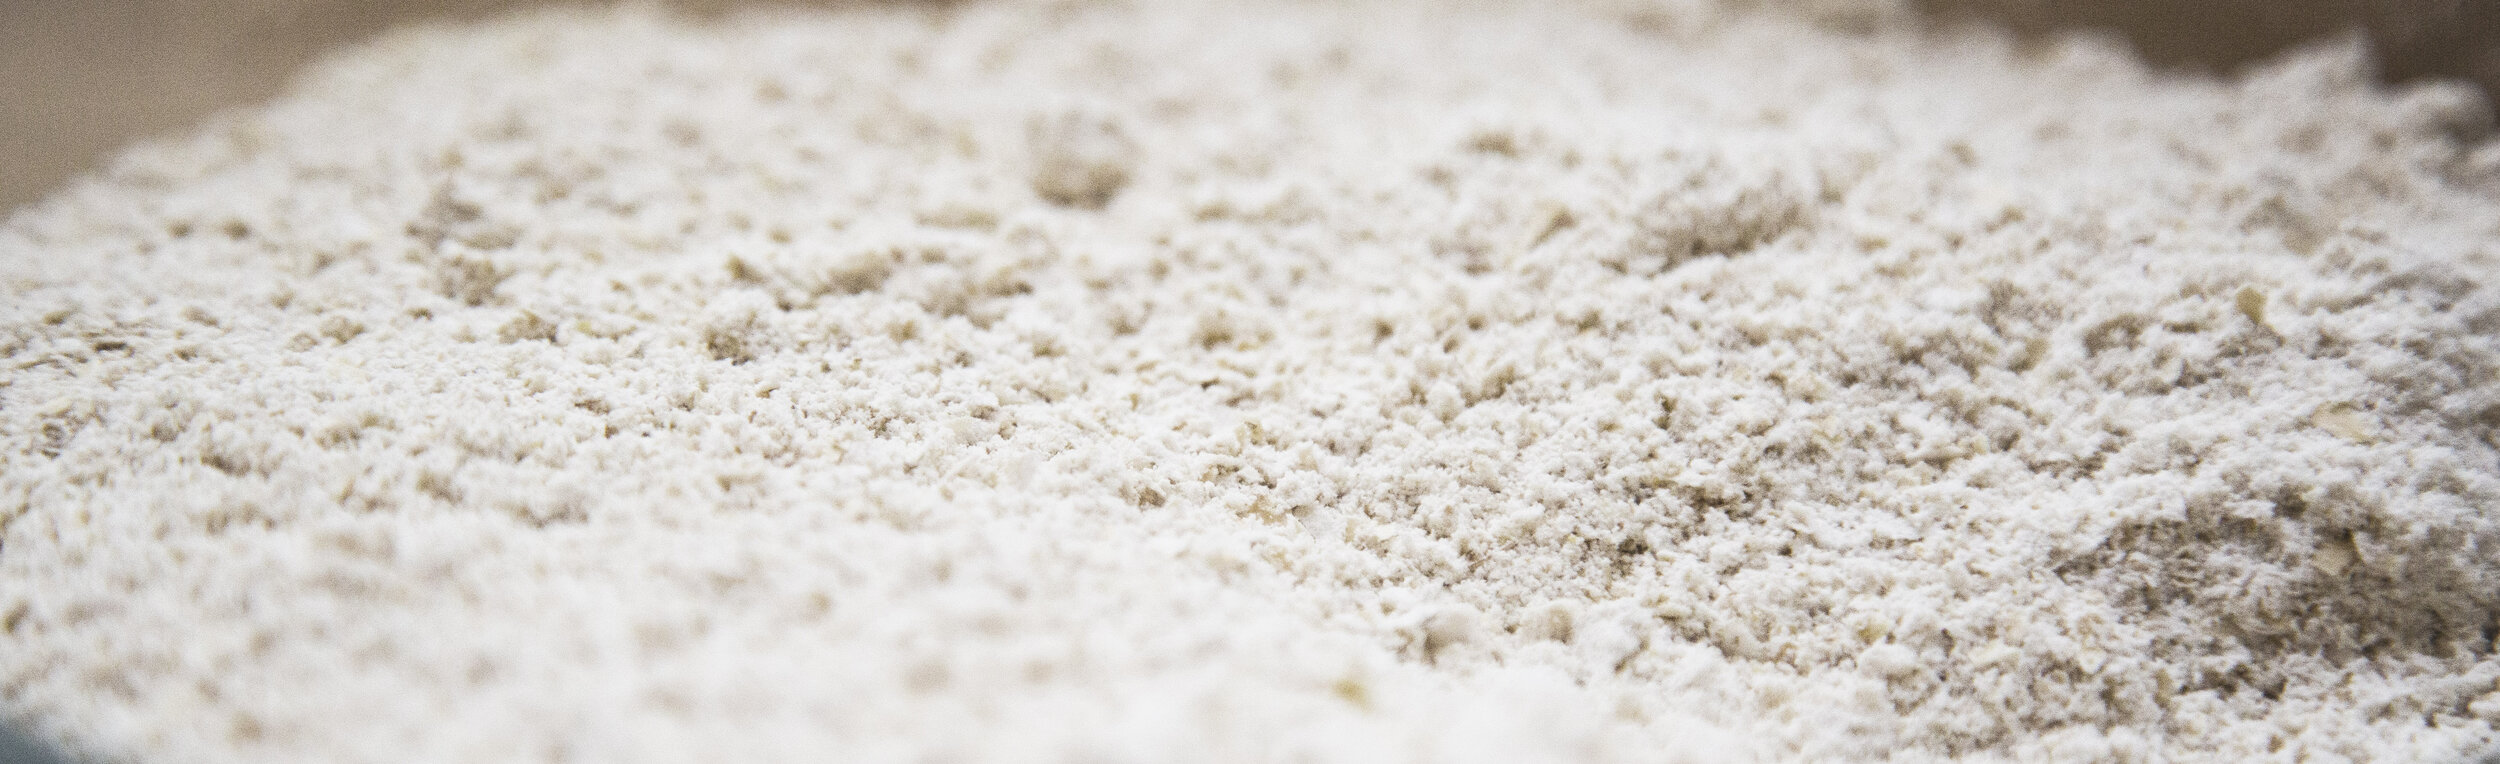 vegan-oat-flour.jpg